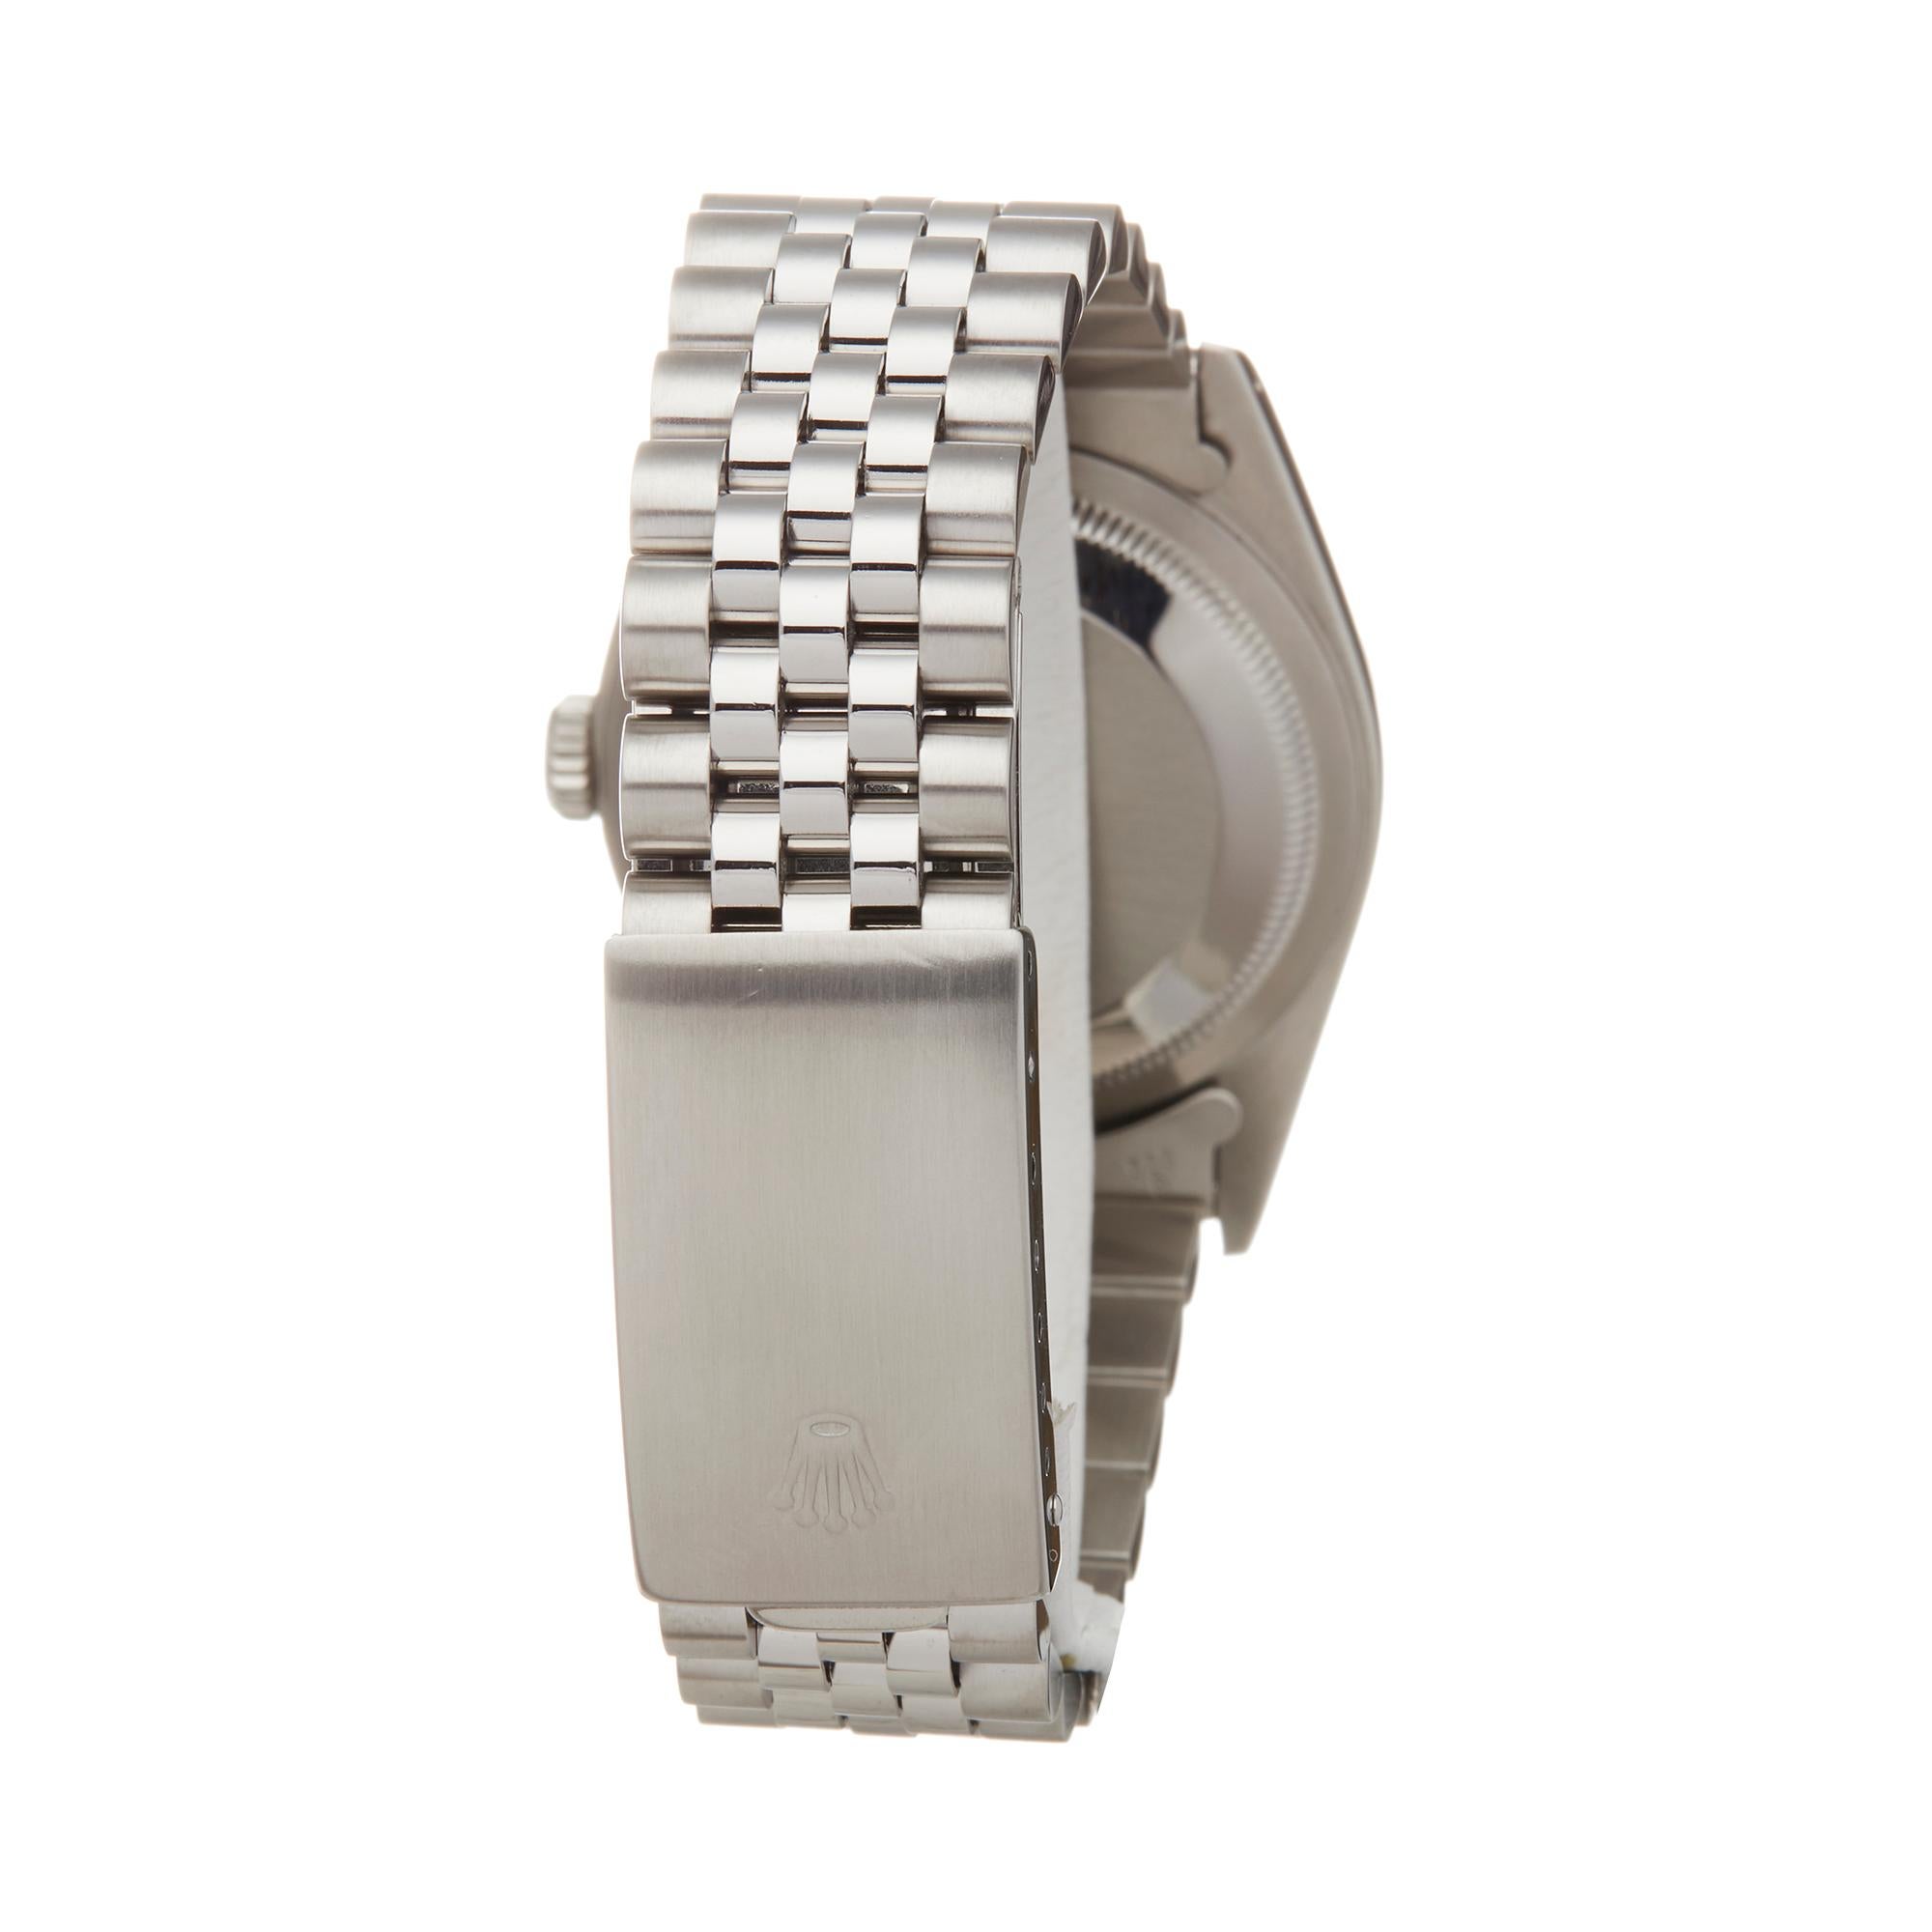 Rolex Datejust 36 Stainless Steel and 18 Karat White Gold 16234 Wristwatch 1